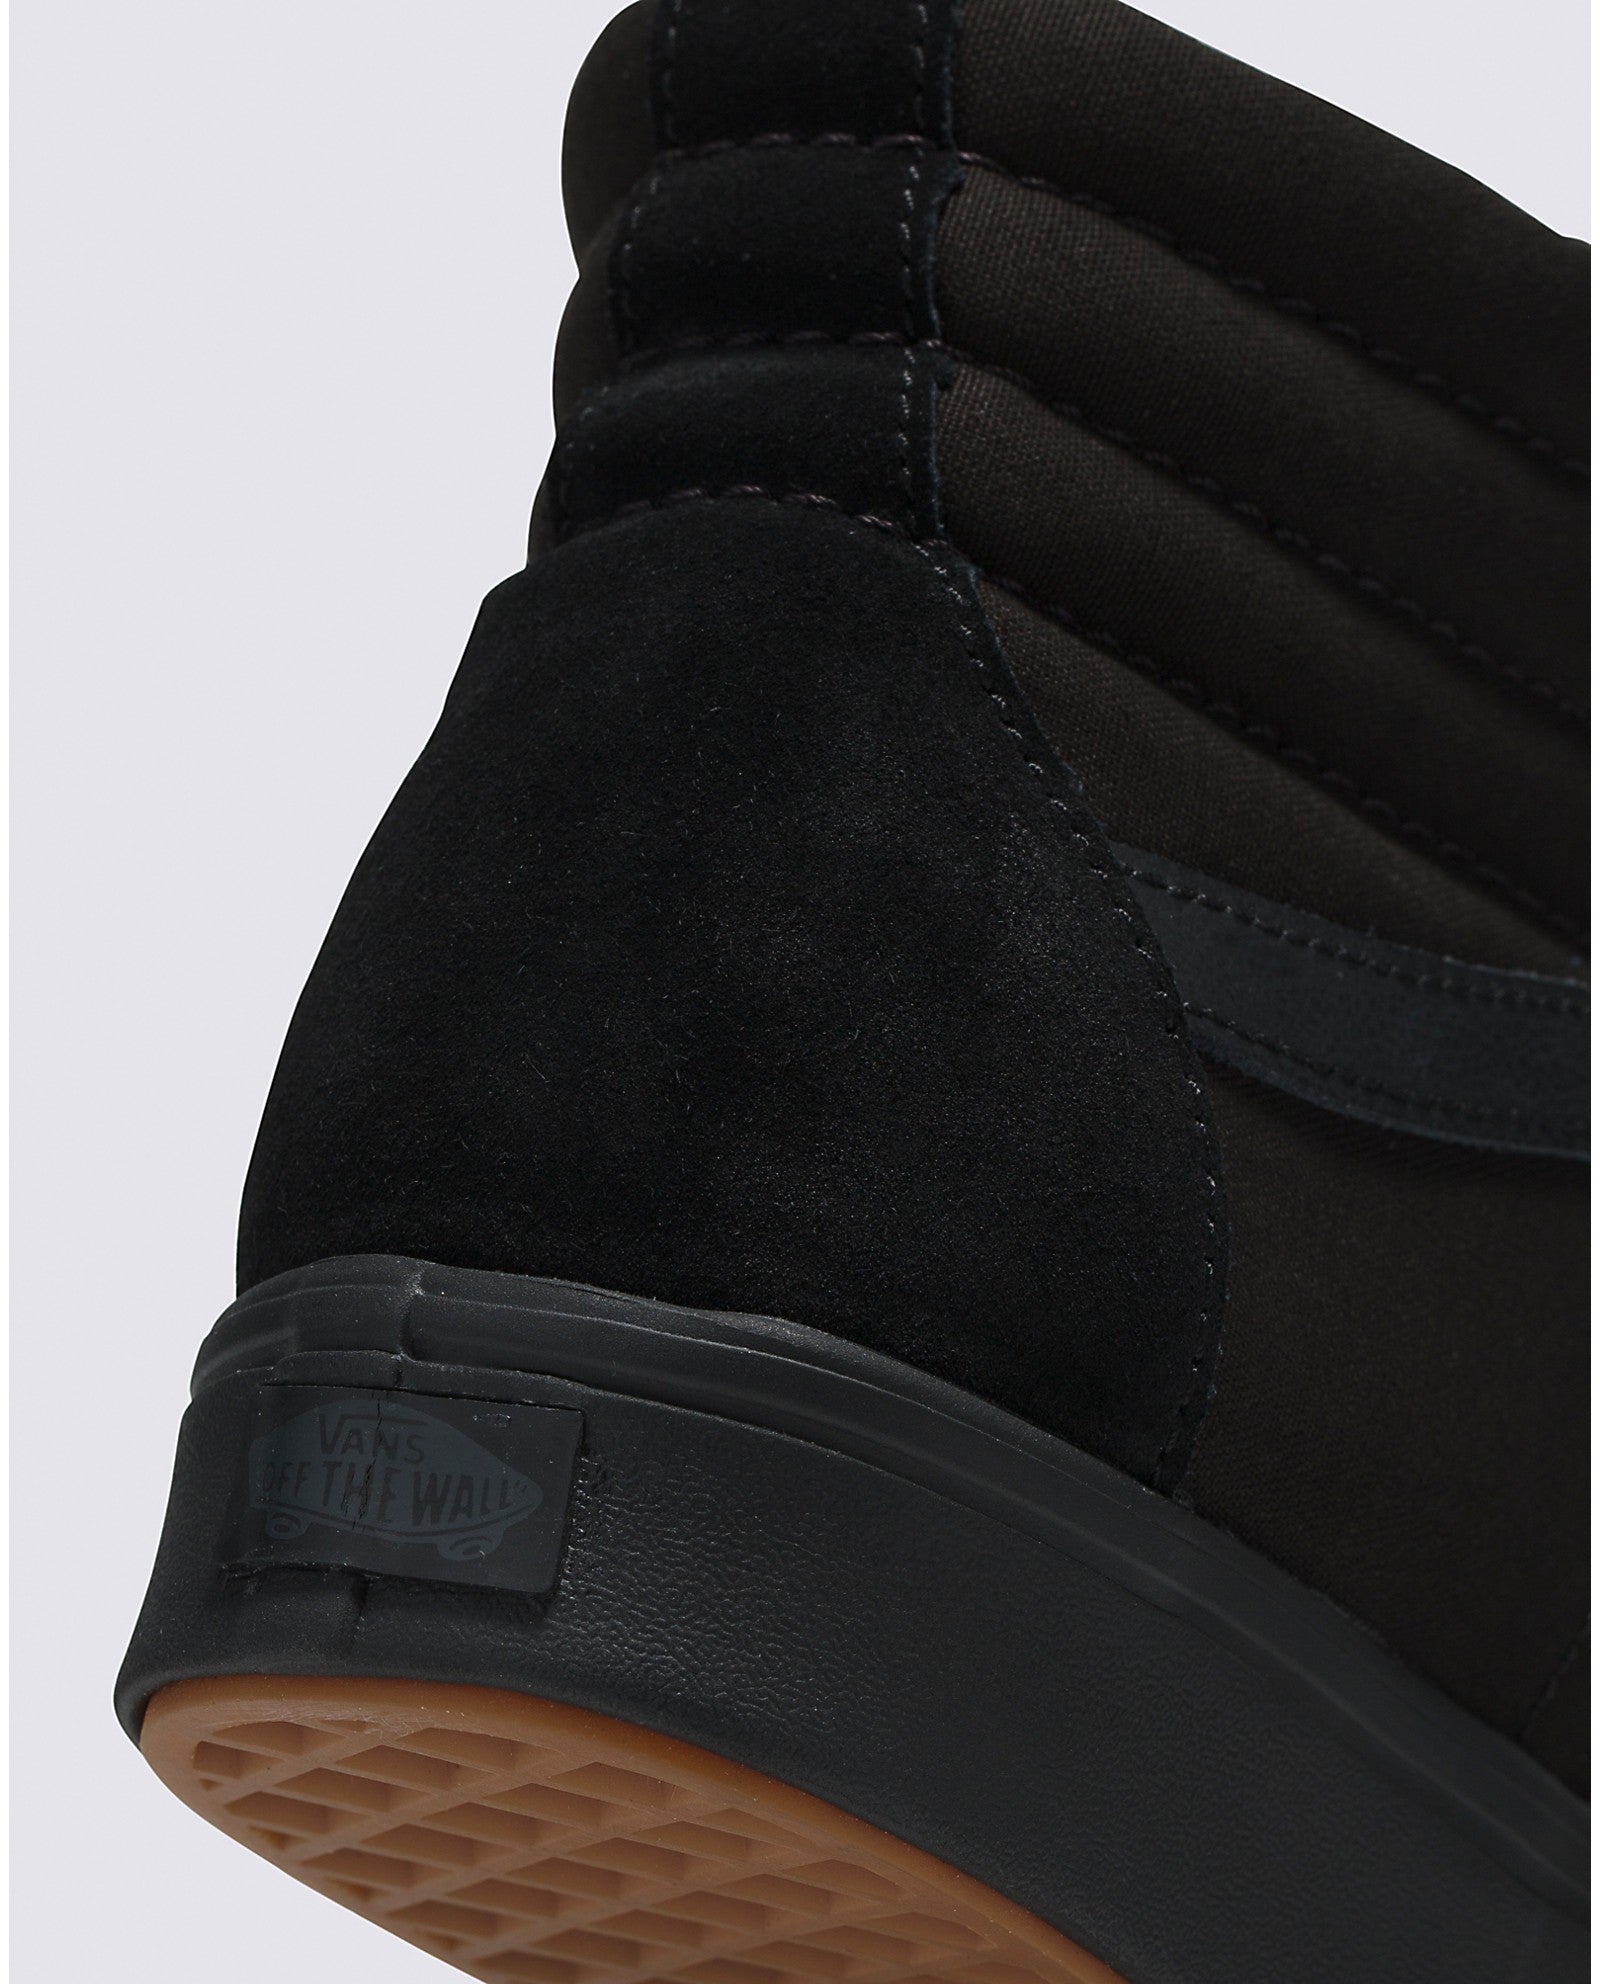 chaussures-comfycush-sk8-hi-all-black-vans-DM2-SHOP-05